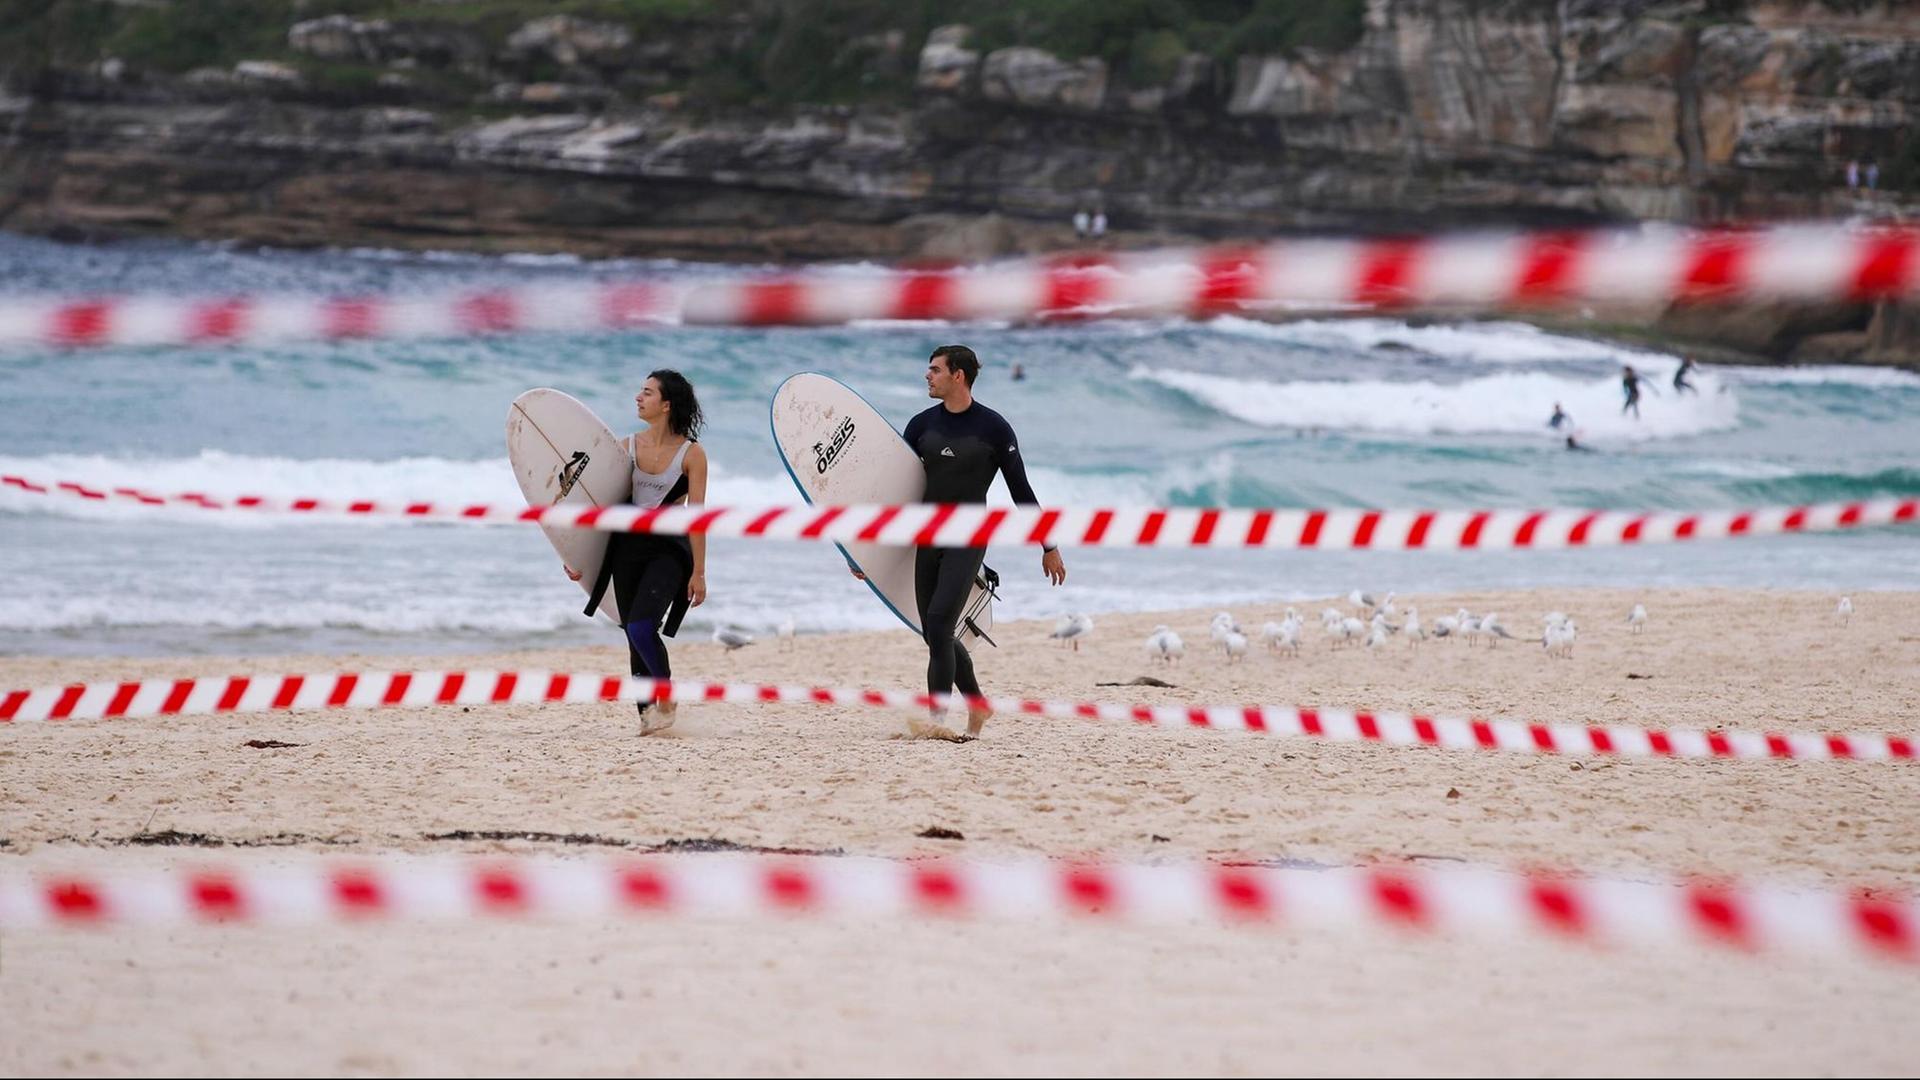 Eine wenige Surfer am Bondi Beach in Sydney, Australien, im Vordergrund ist Absperrband zu sehen, aufgenommen im April 2020